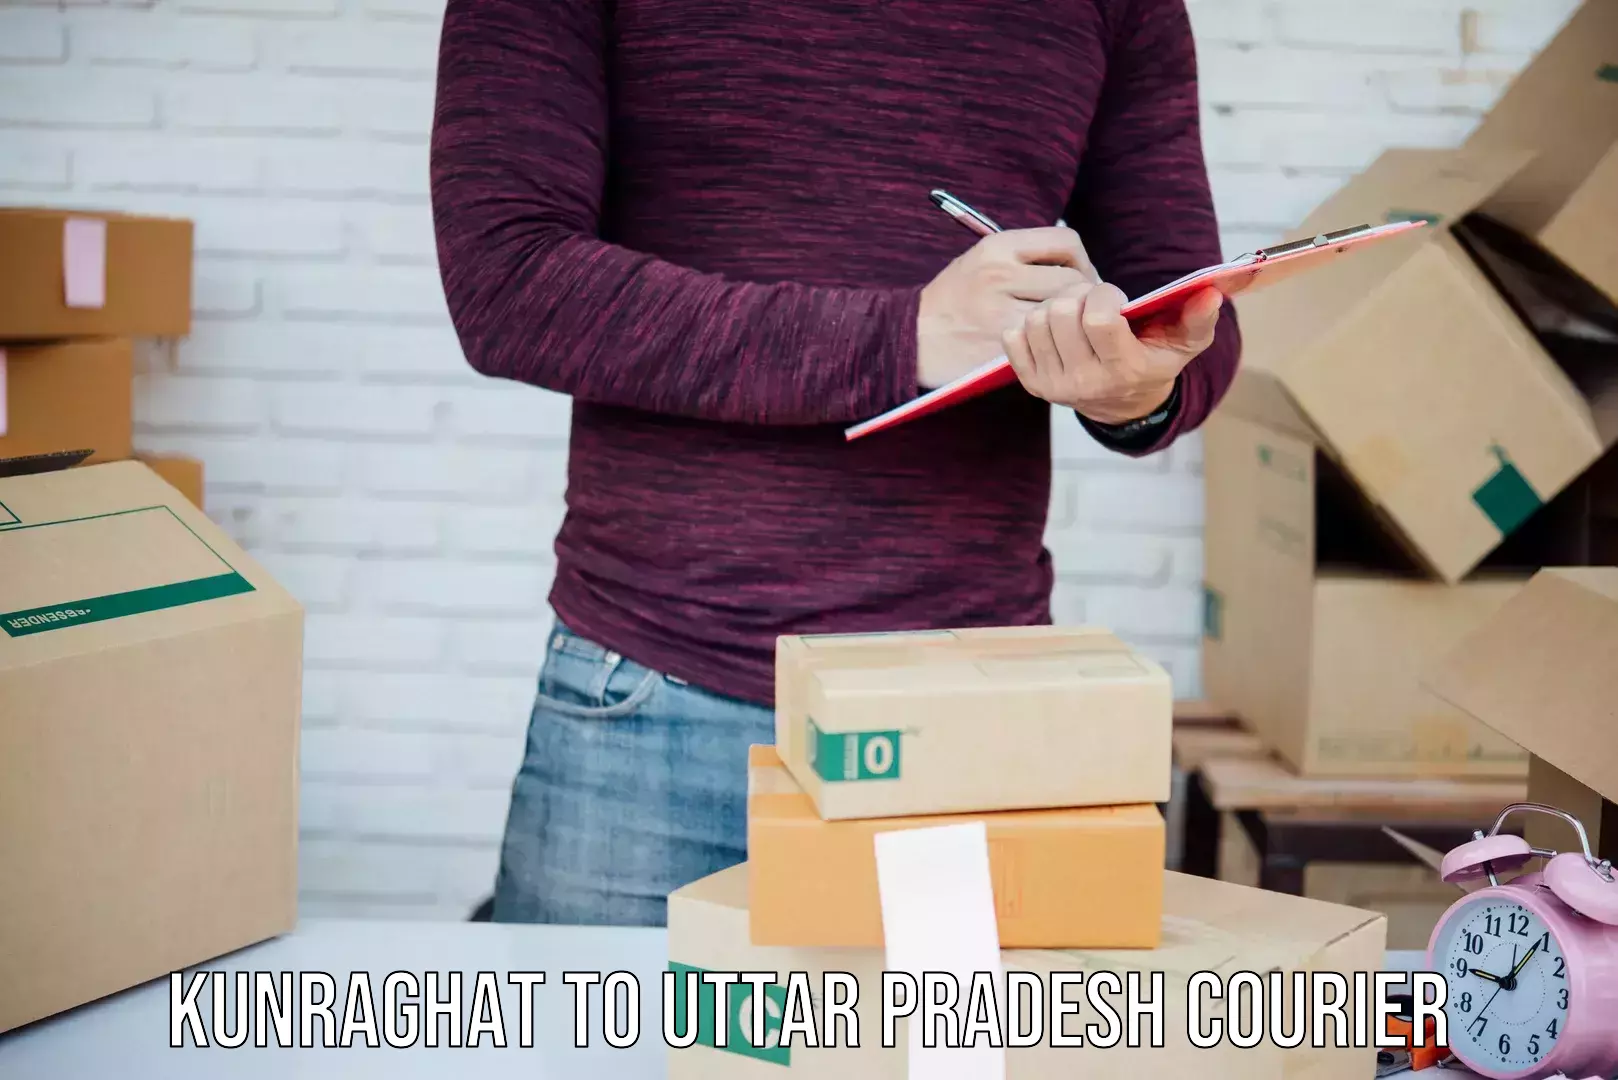 User-friendly courier app Kunraghat to Uttar Pradesh